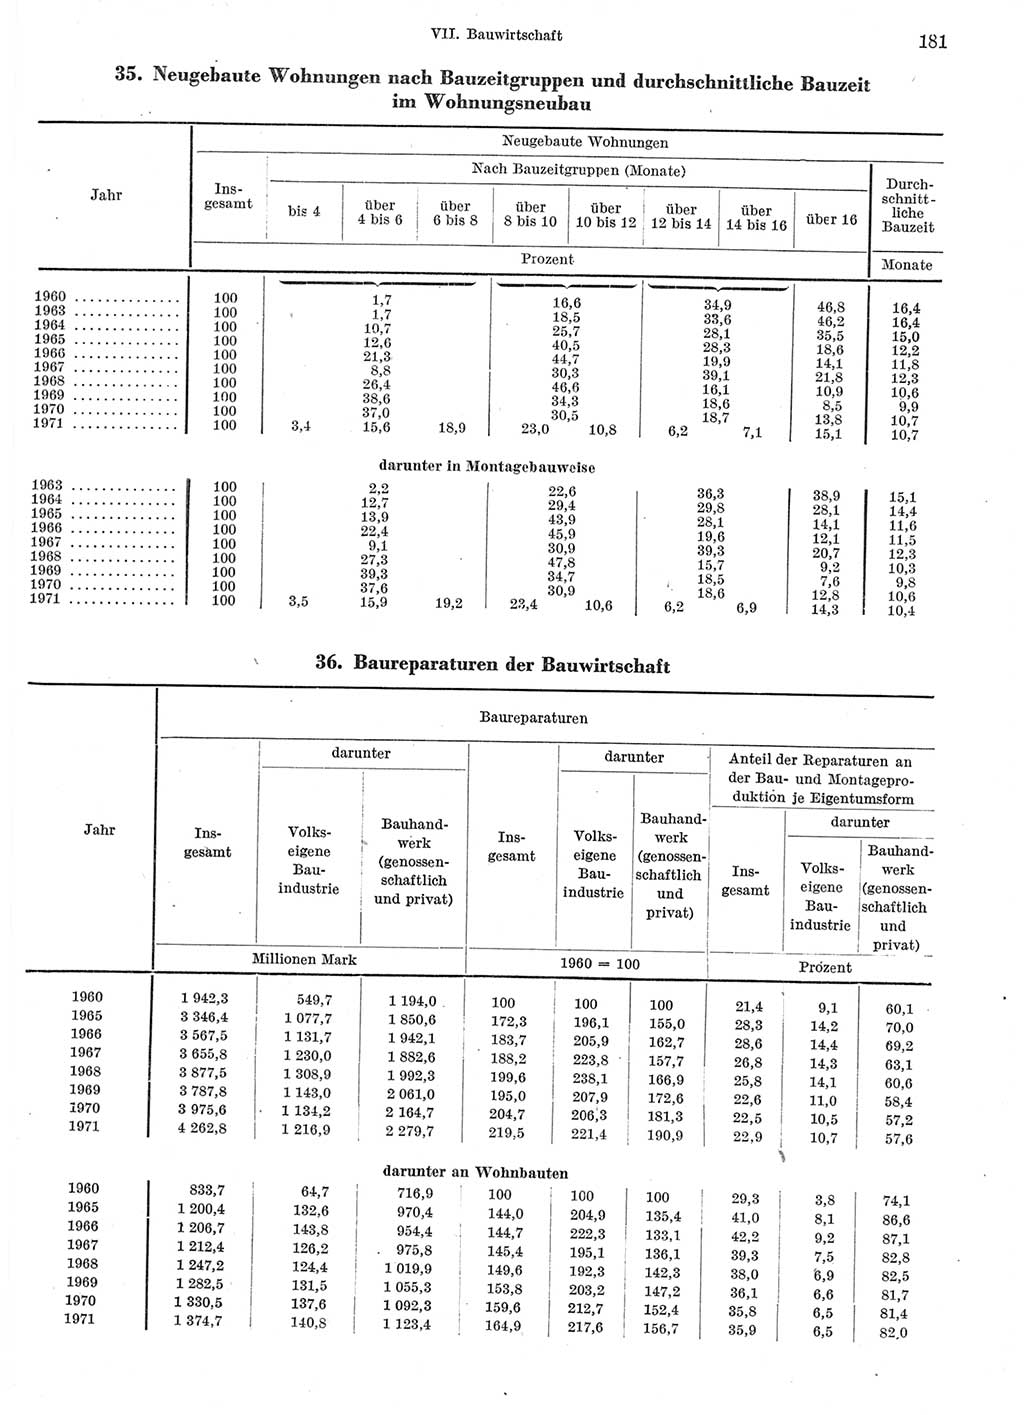 Statistisches Jahrbuch der Deutschen Demokratischen Republik (DDR) 1972, Seite 181 (Stat. Jb. DDR 1972, S. 181)